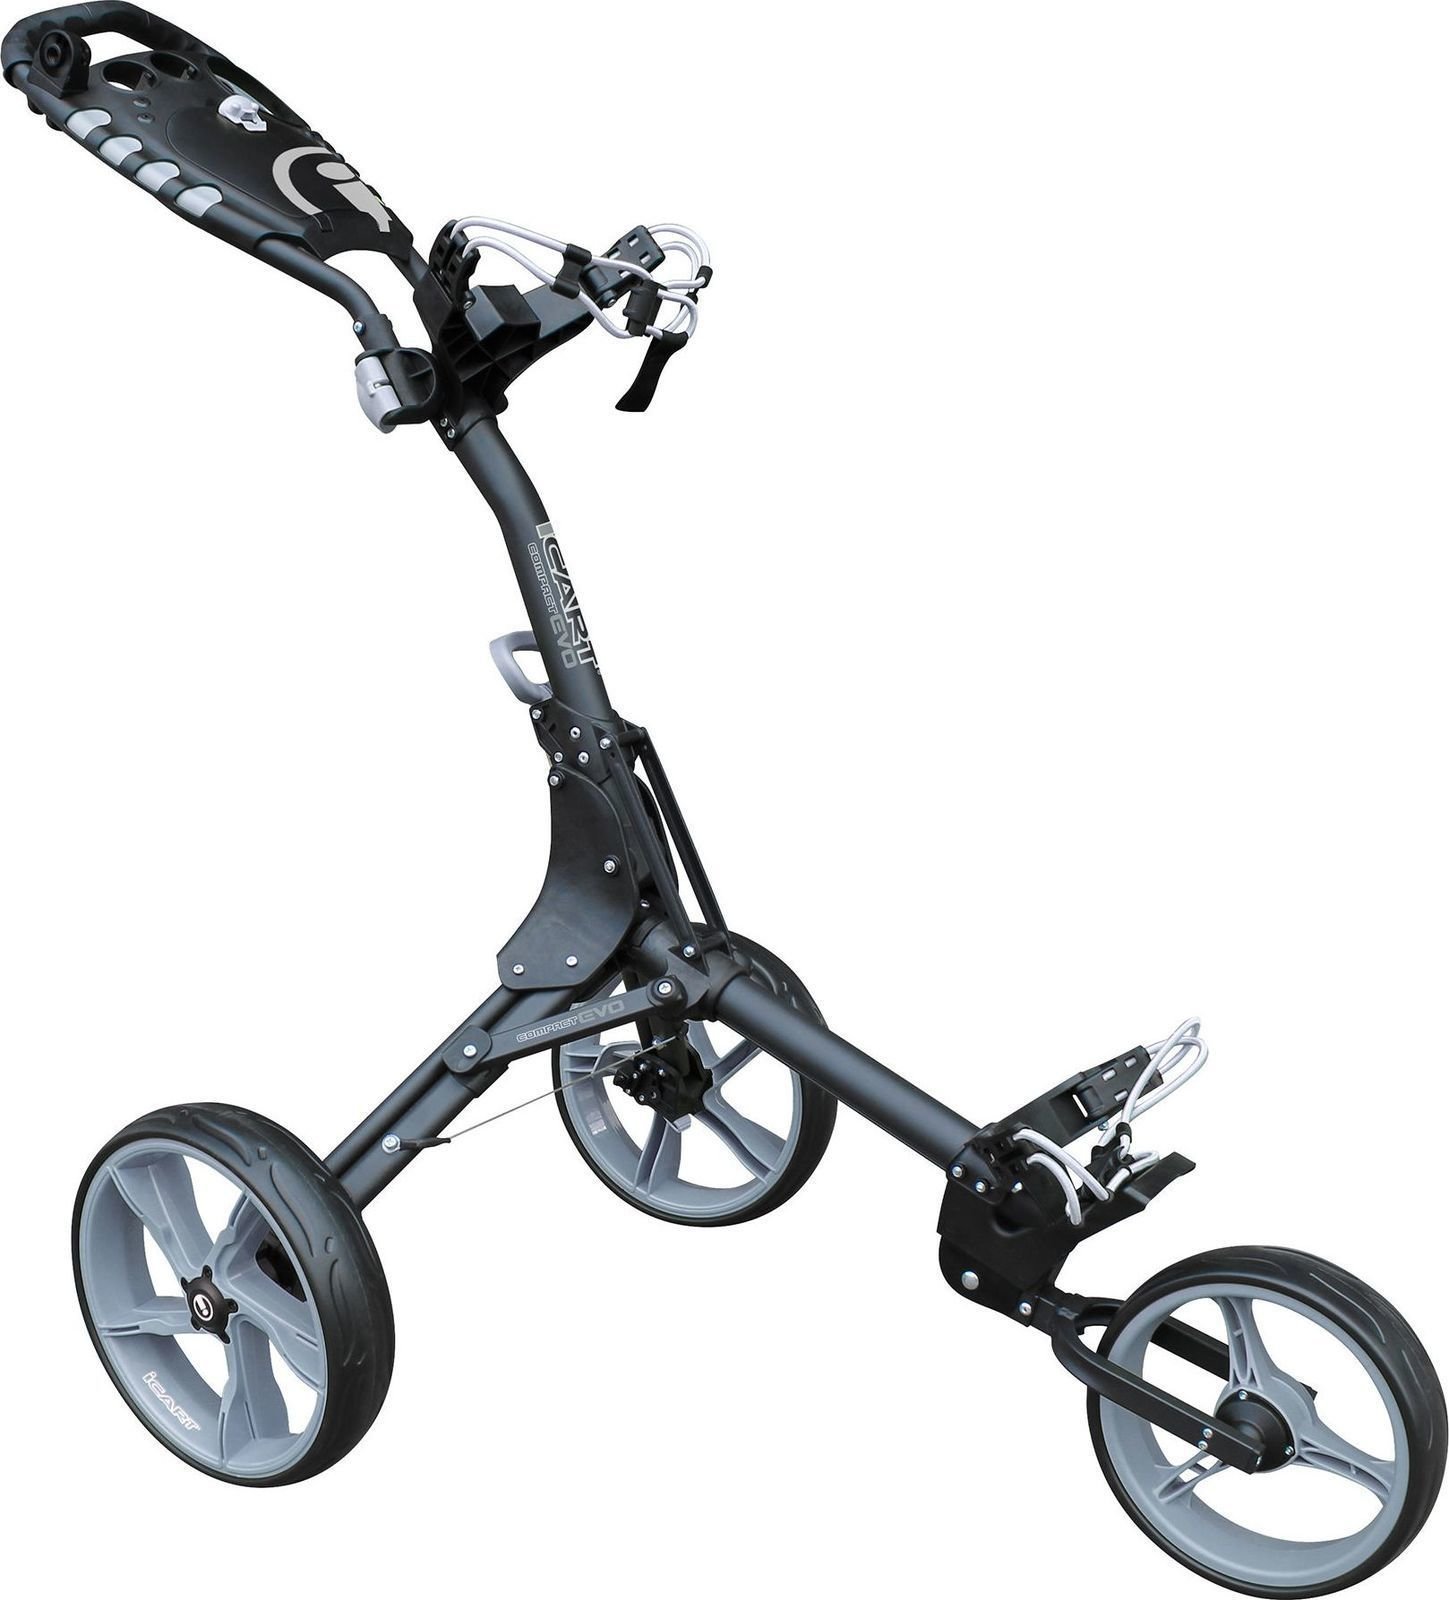 Chariot de golf manuel iCart Compact Evo Chariot de golf manuel